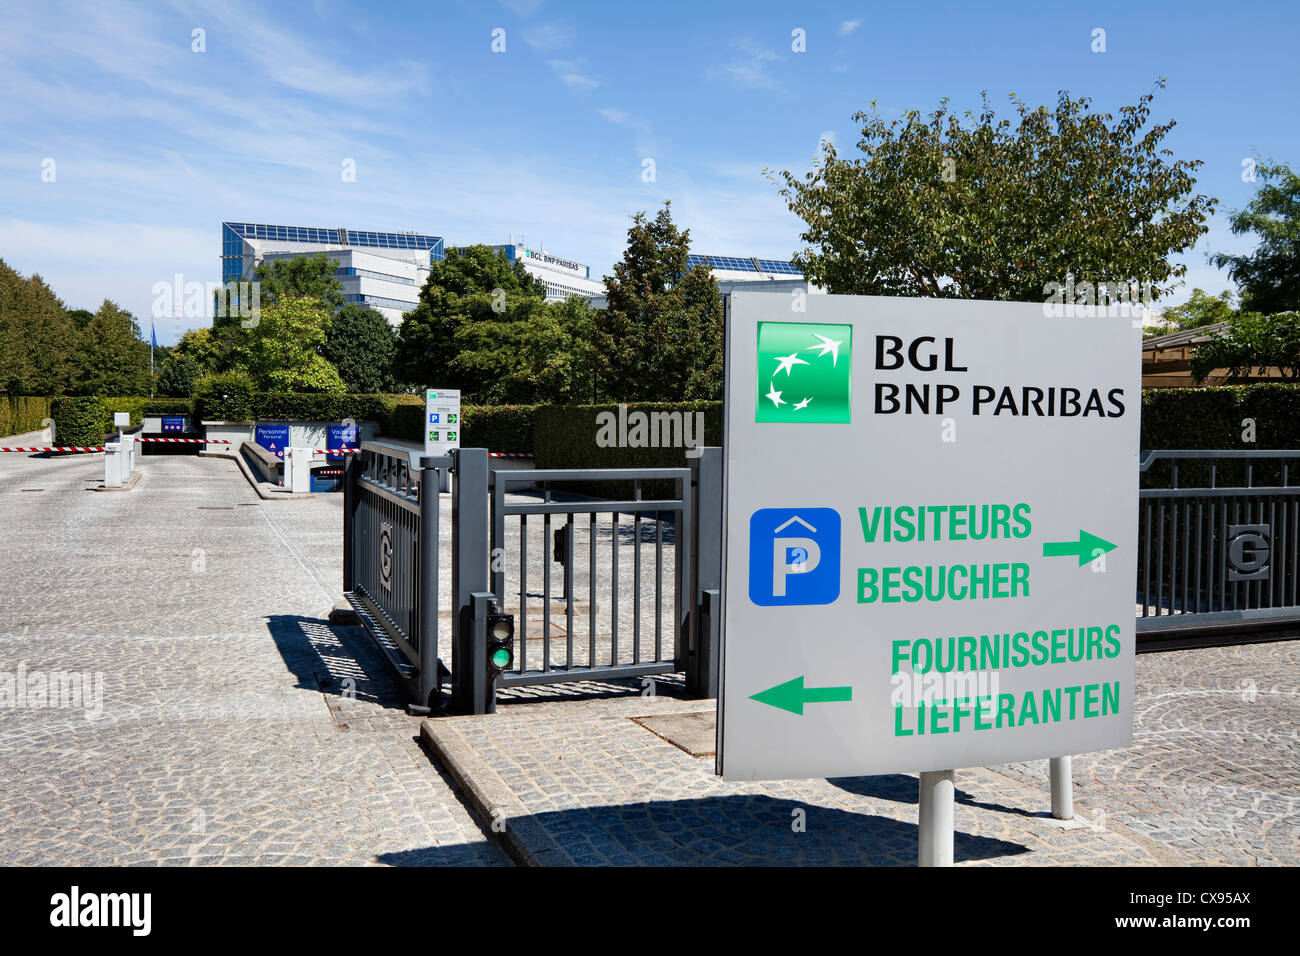 BGL BNP Paribas S.A., edificio de banco, Kirchberg, distrito, ciudad de Luxemburgo, Europa Foto de stock